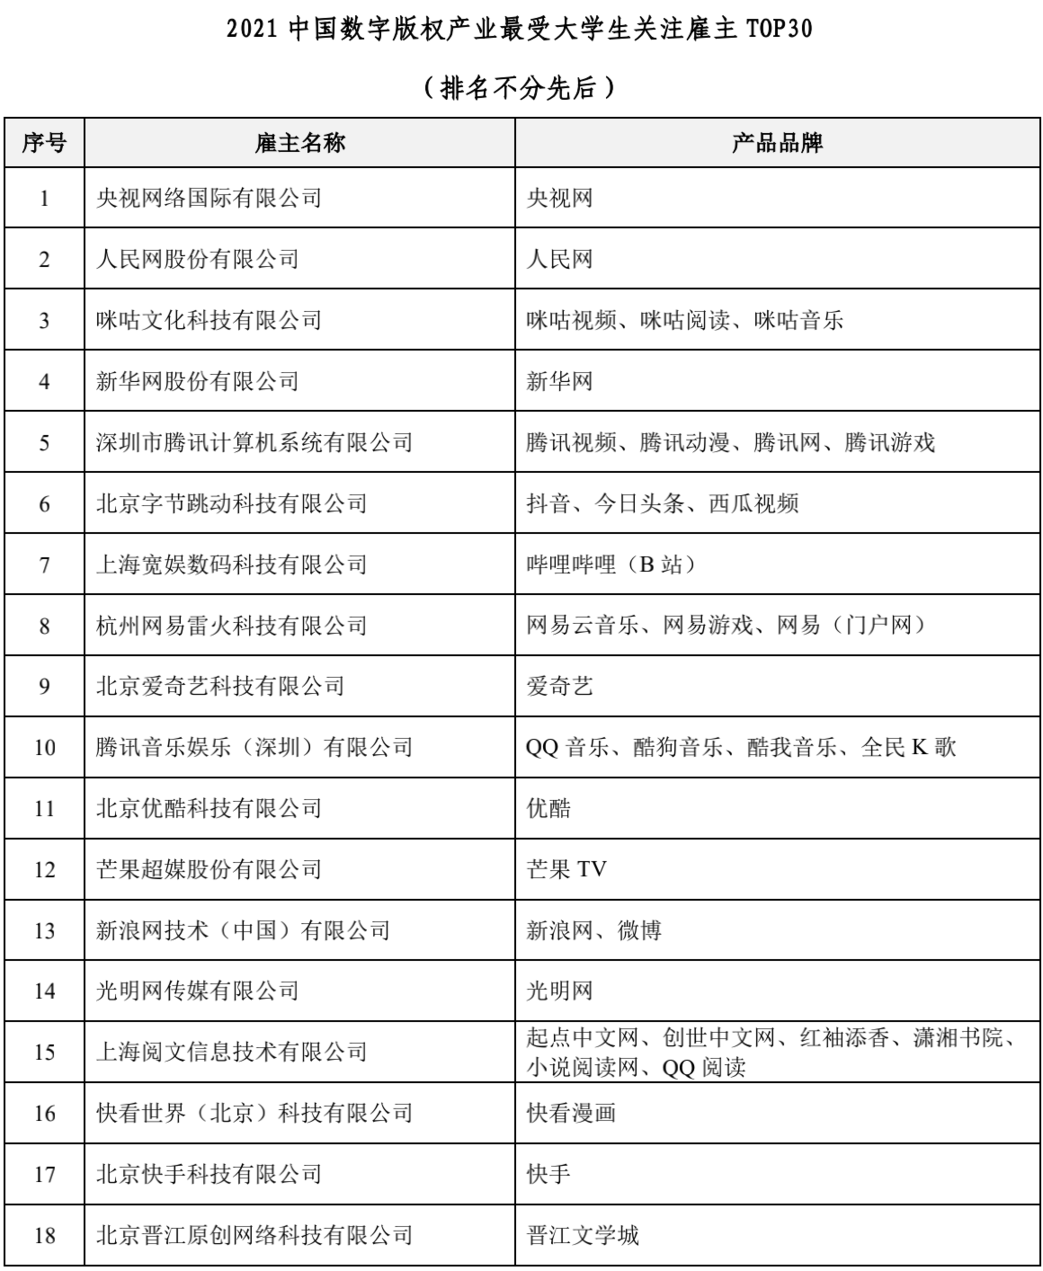 光明网入选“2021中国数字版权产业最受大学生关注雇主TOP30”榜单